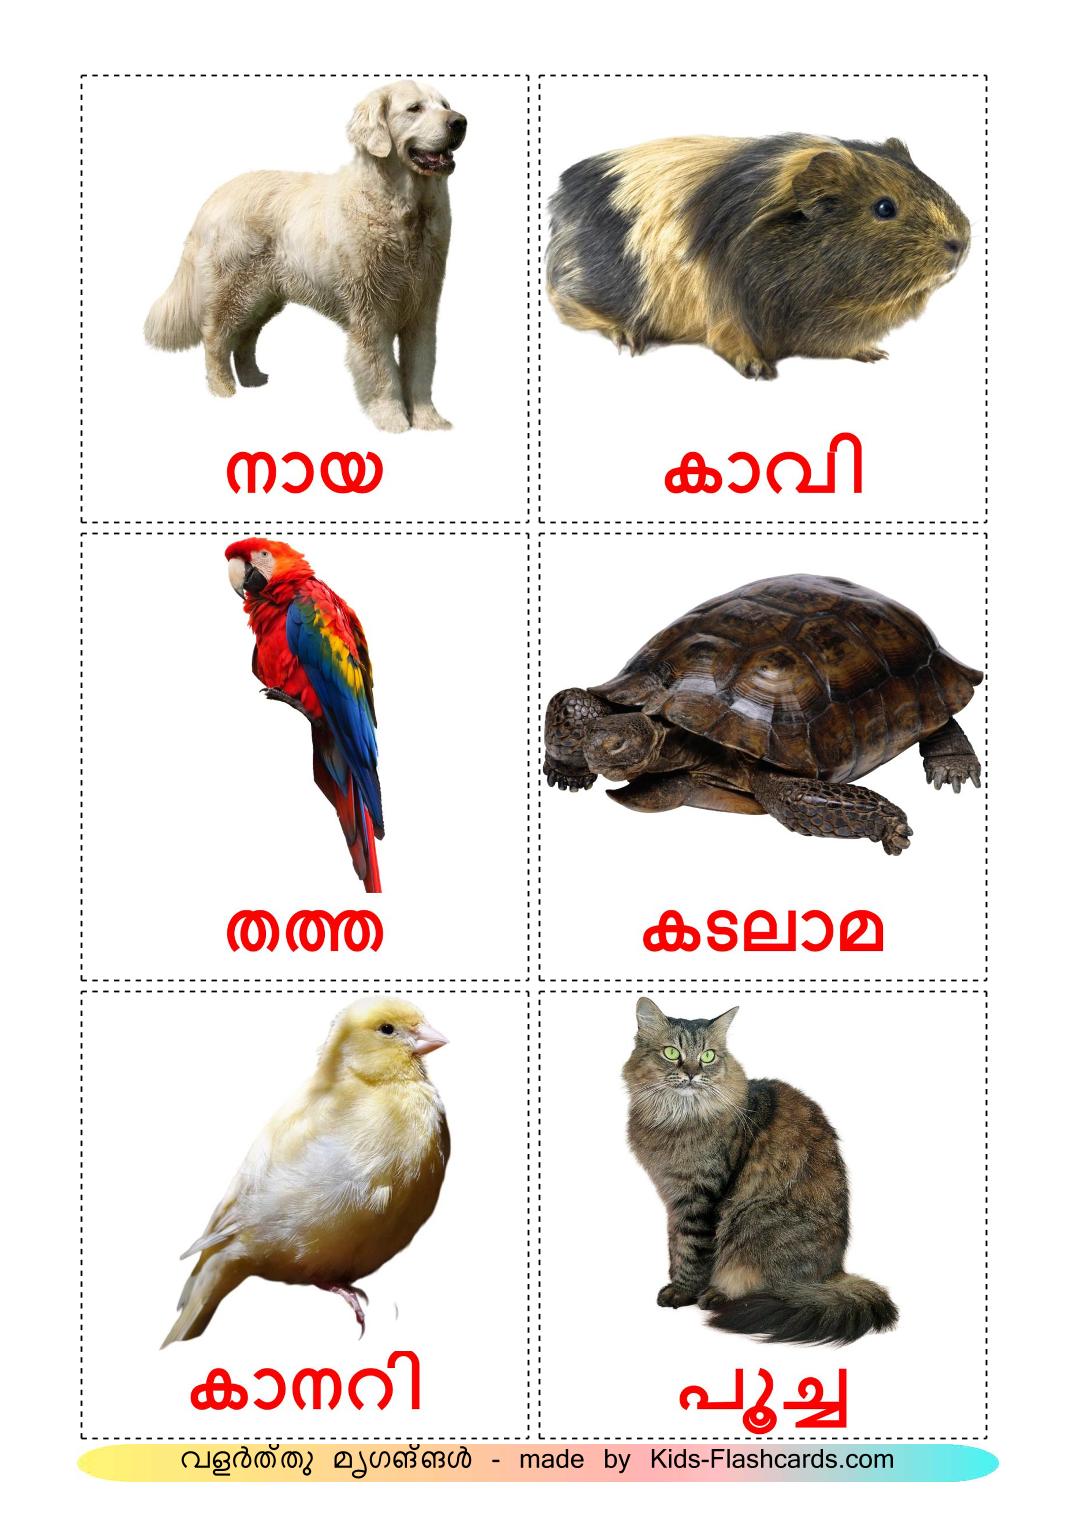 Huisdieren - 10 gratis printbare malayalame kaarten